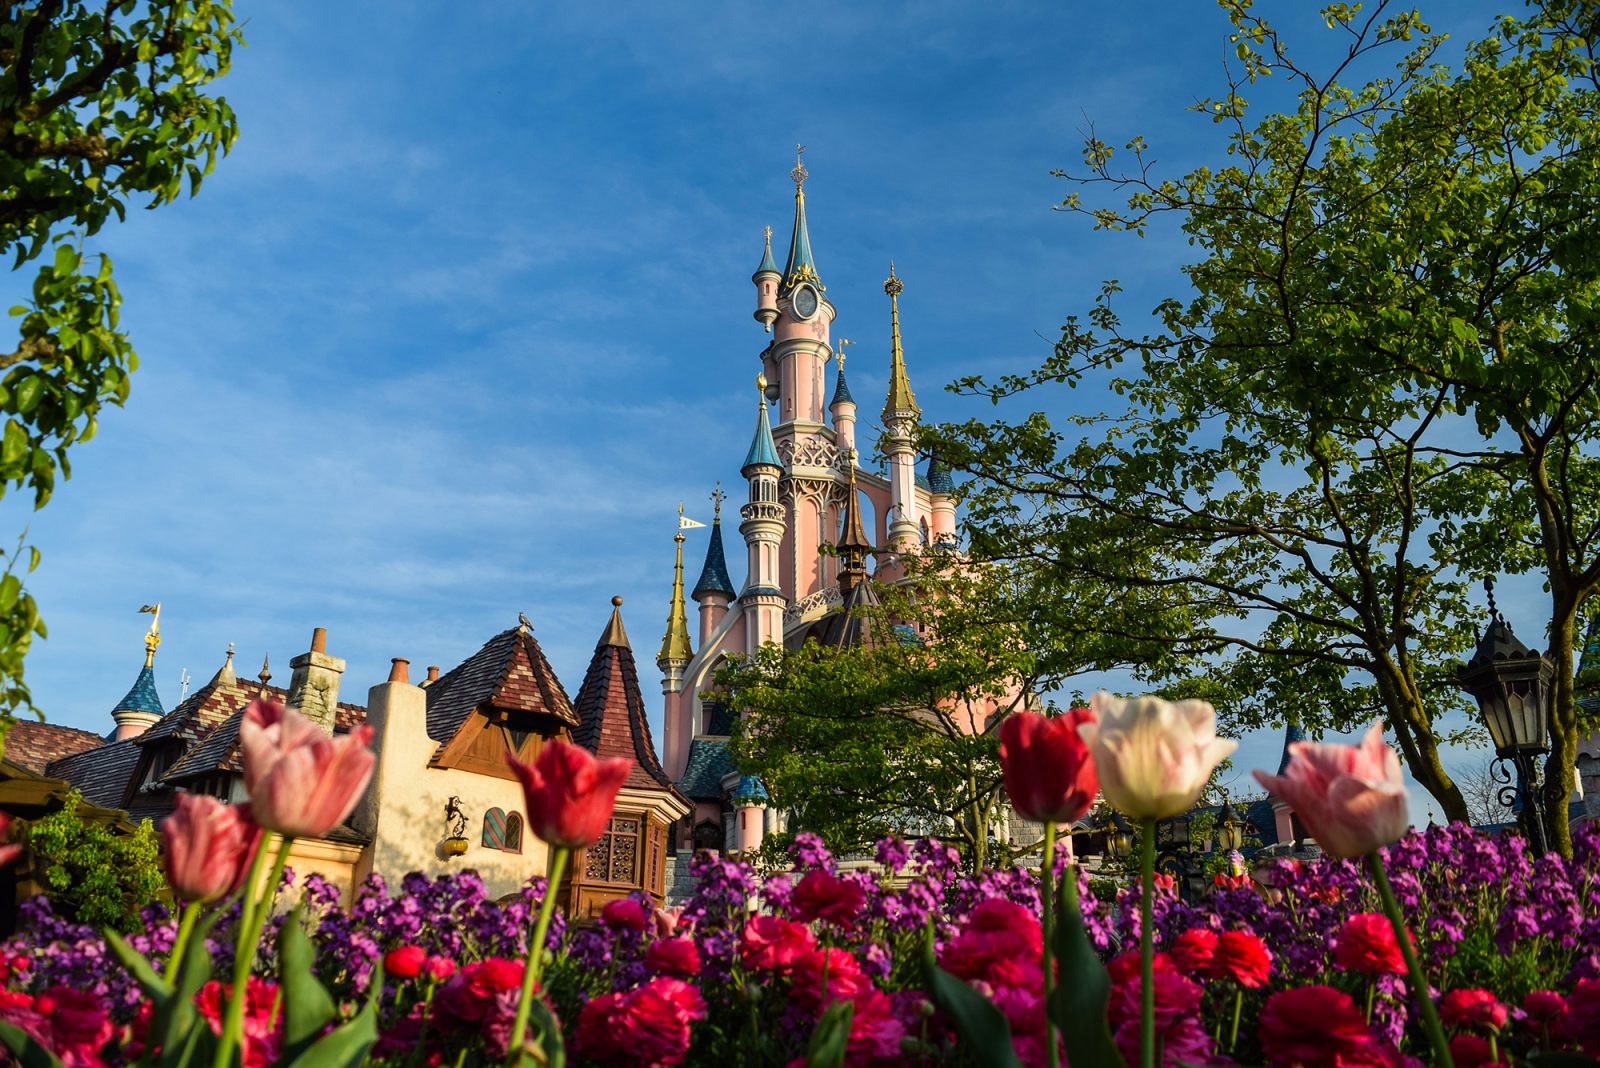 8 Best Views Of The Disneyland Paris Castle - Disney Trippers